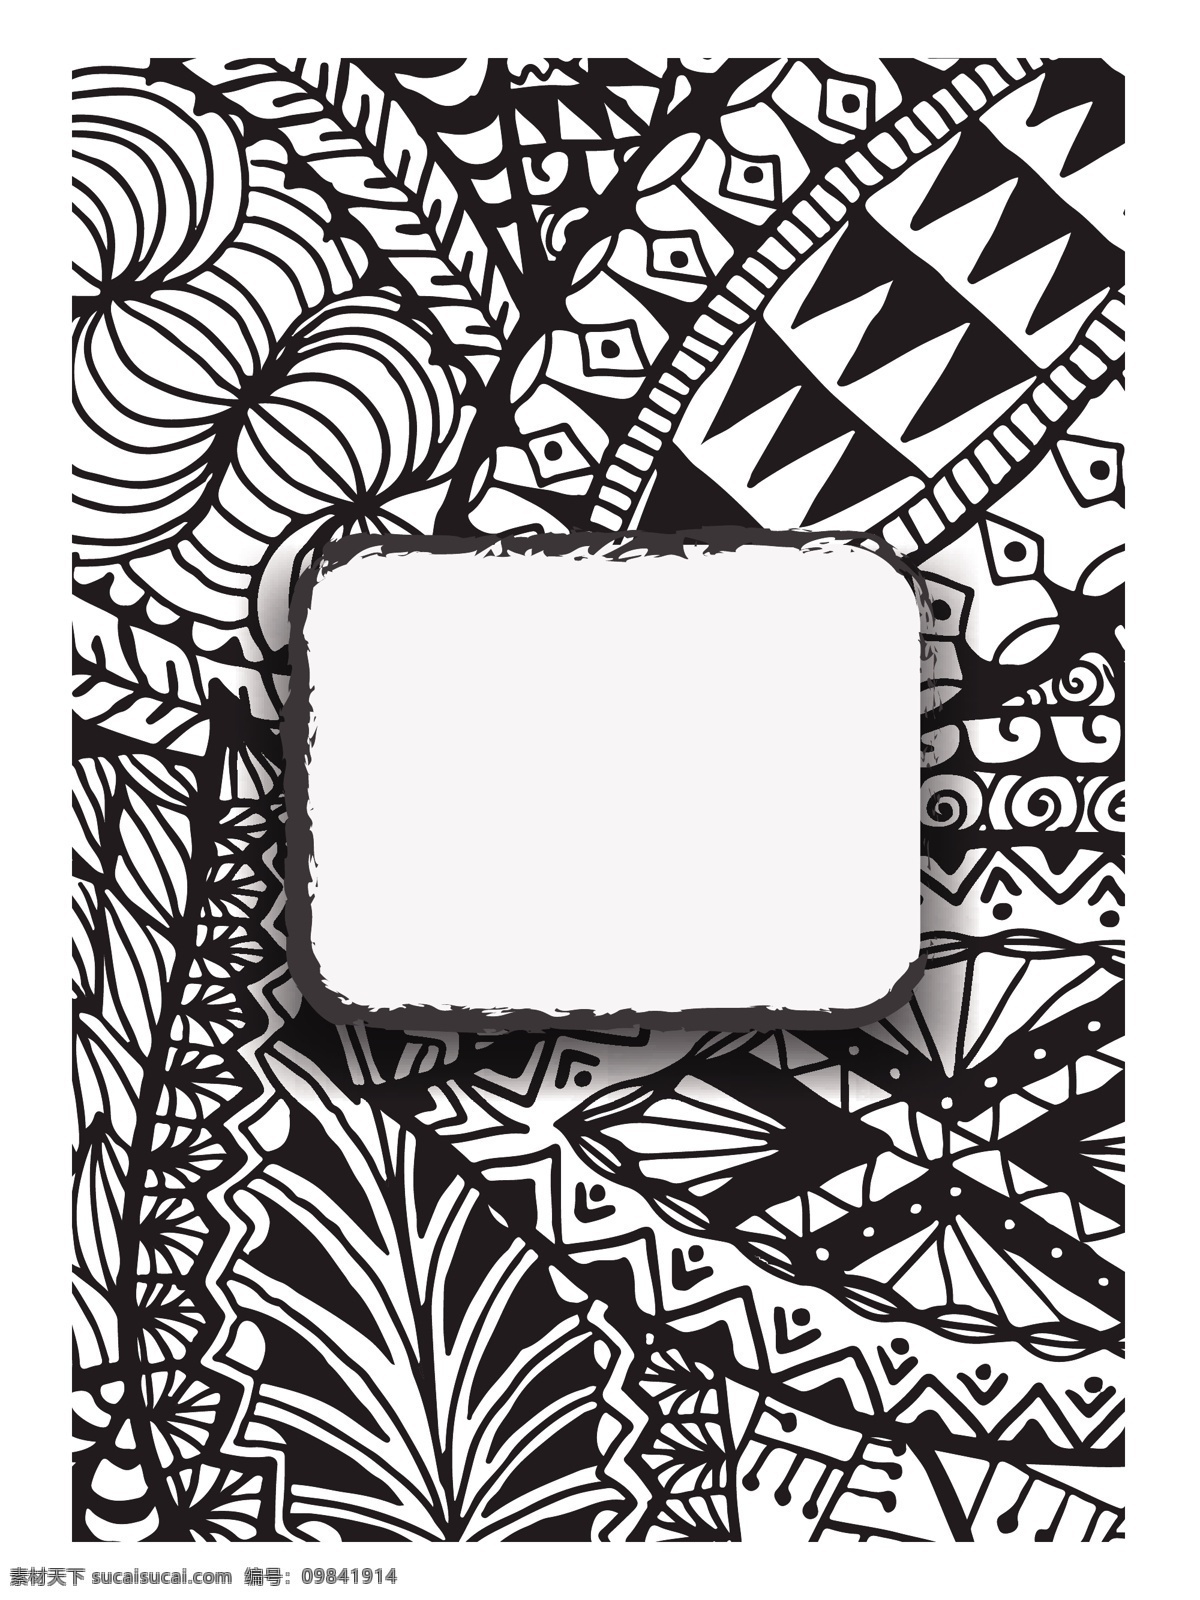 方块 黑白 创意 涂鸦 抽象 背景 矢量素材 背景素材 设计模板 设计素材